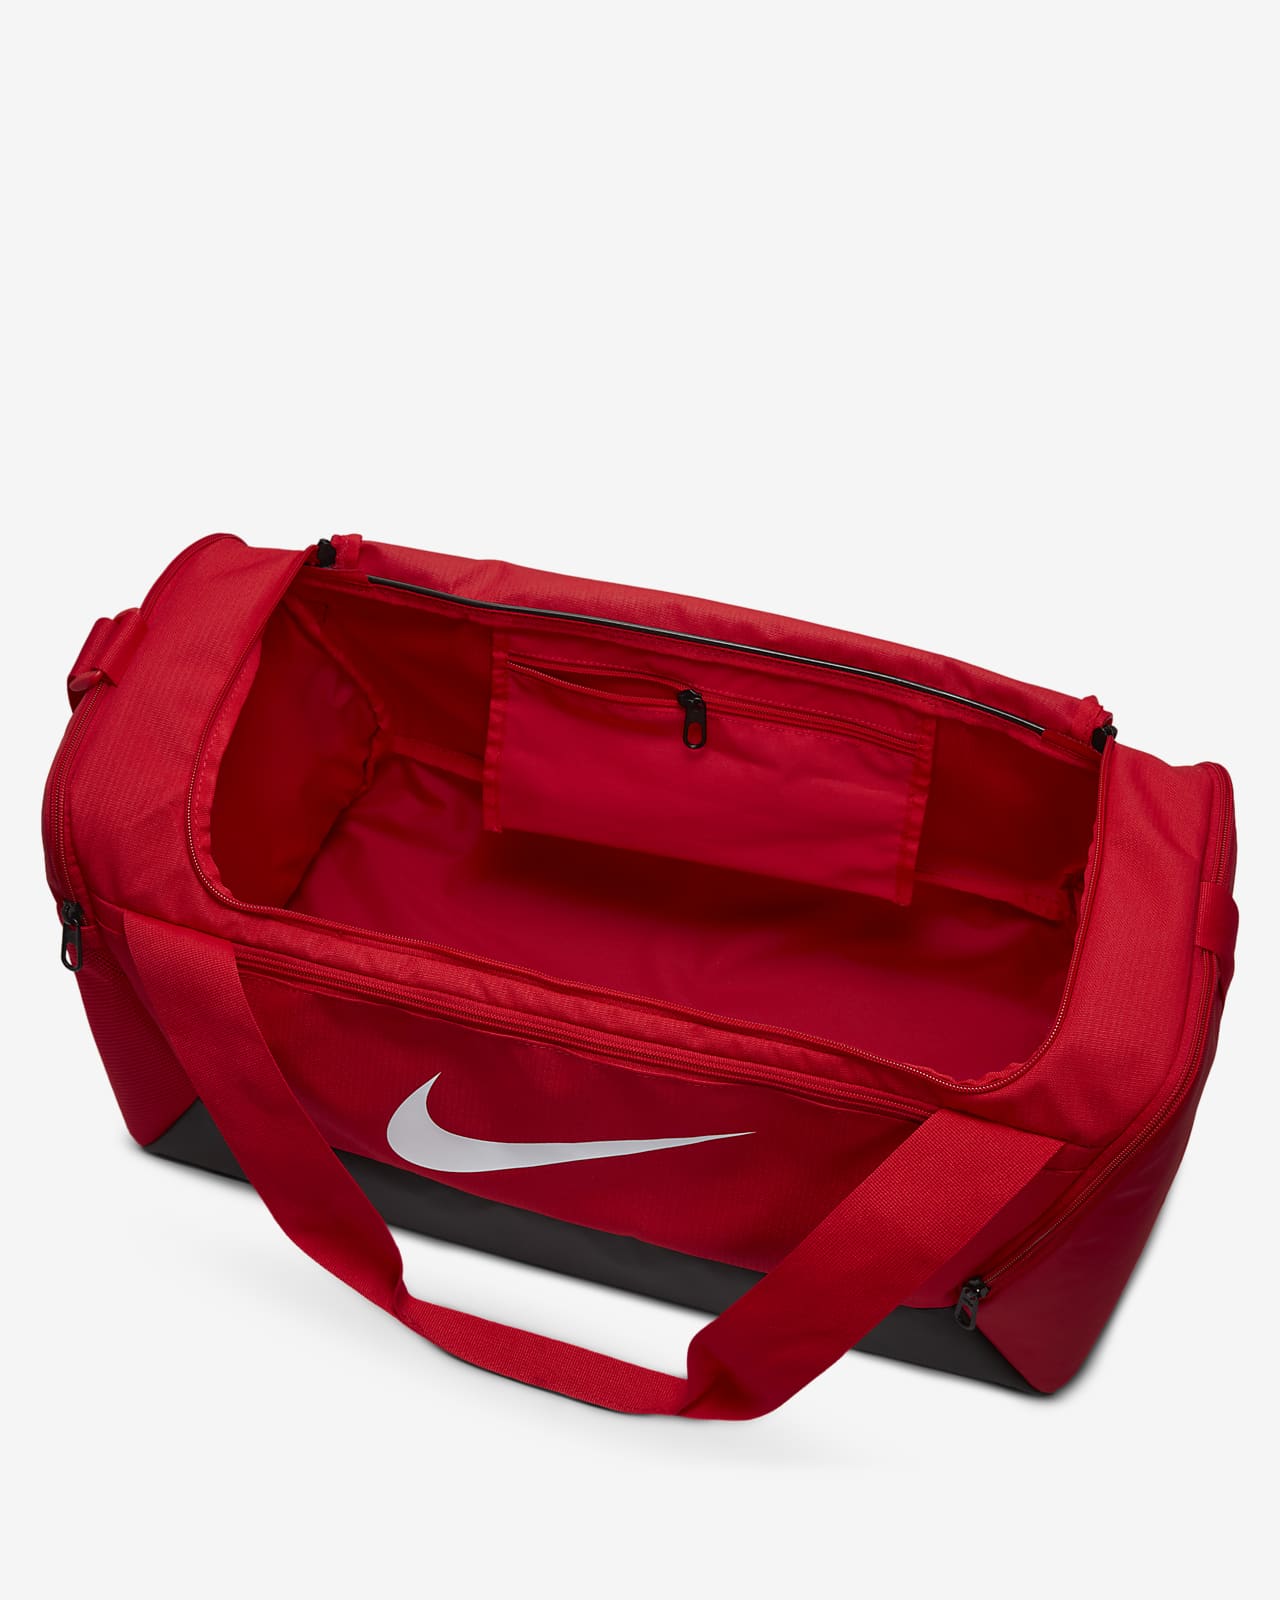 Nike Brasilia DD4579-084 Unisex Τσάντα Ώμου για Γυμναστήριο Γκρι